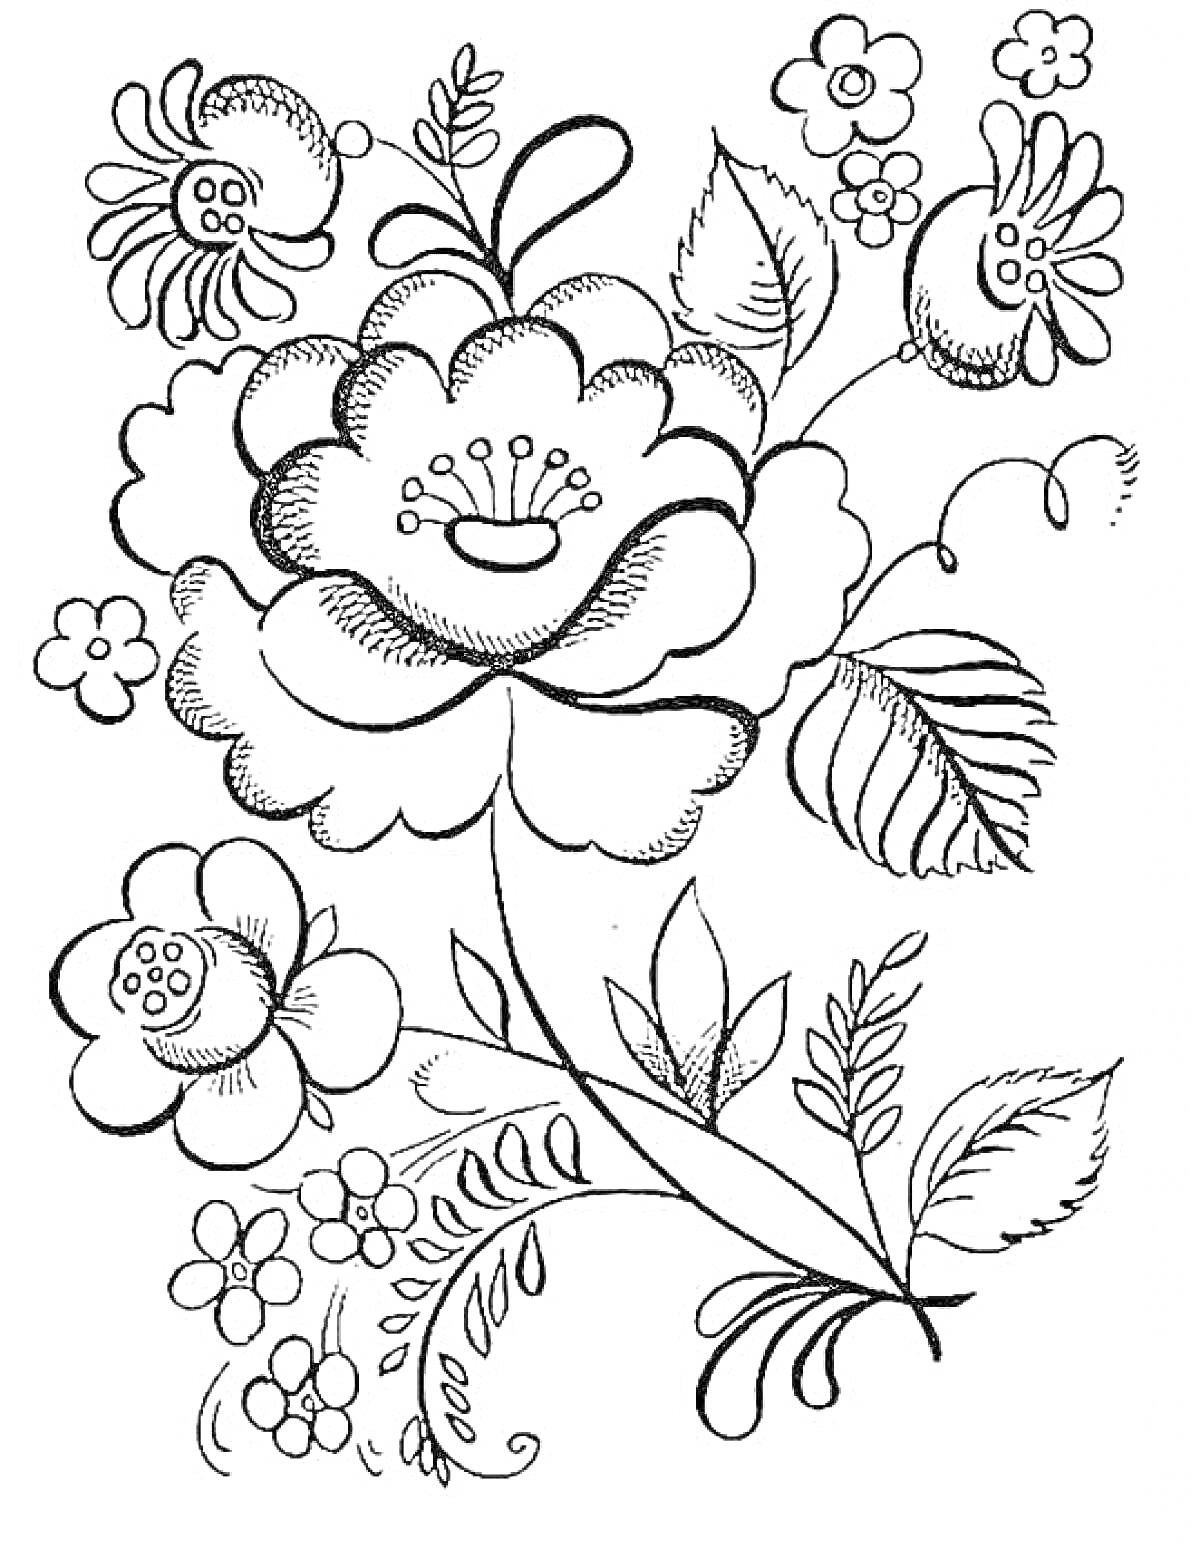 Раскраска Цветочный рисунок в стиле Гжель с большими и маленькими цветами, листьями и завитками